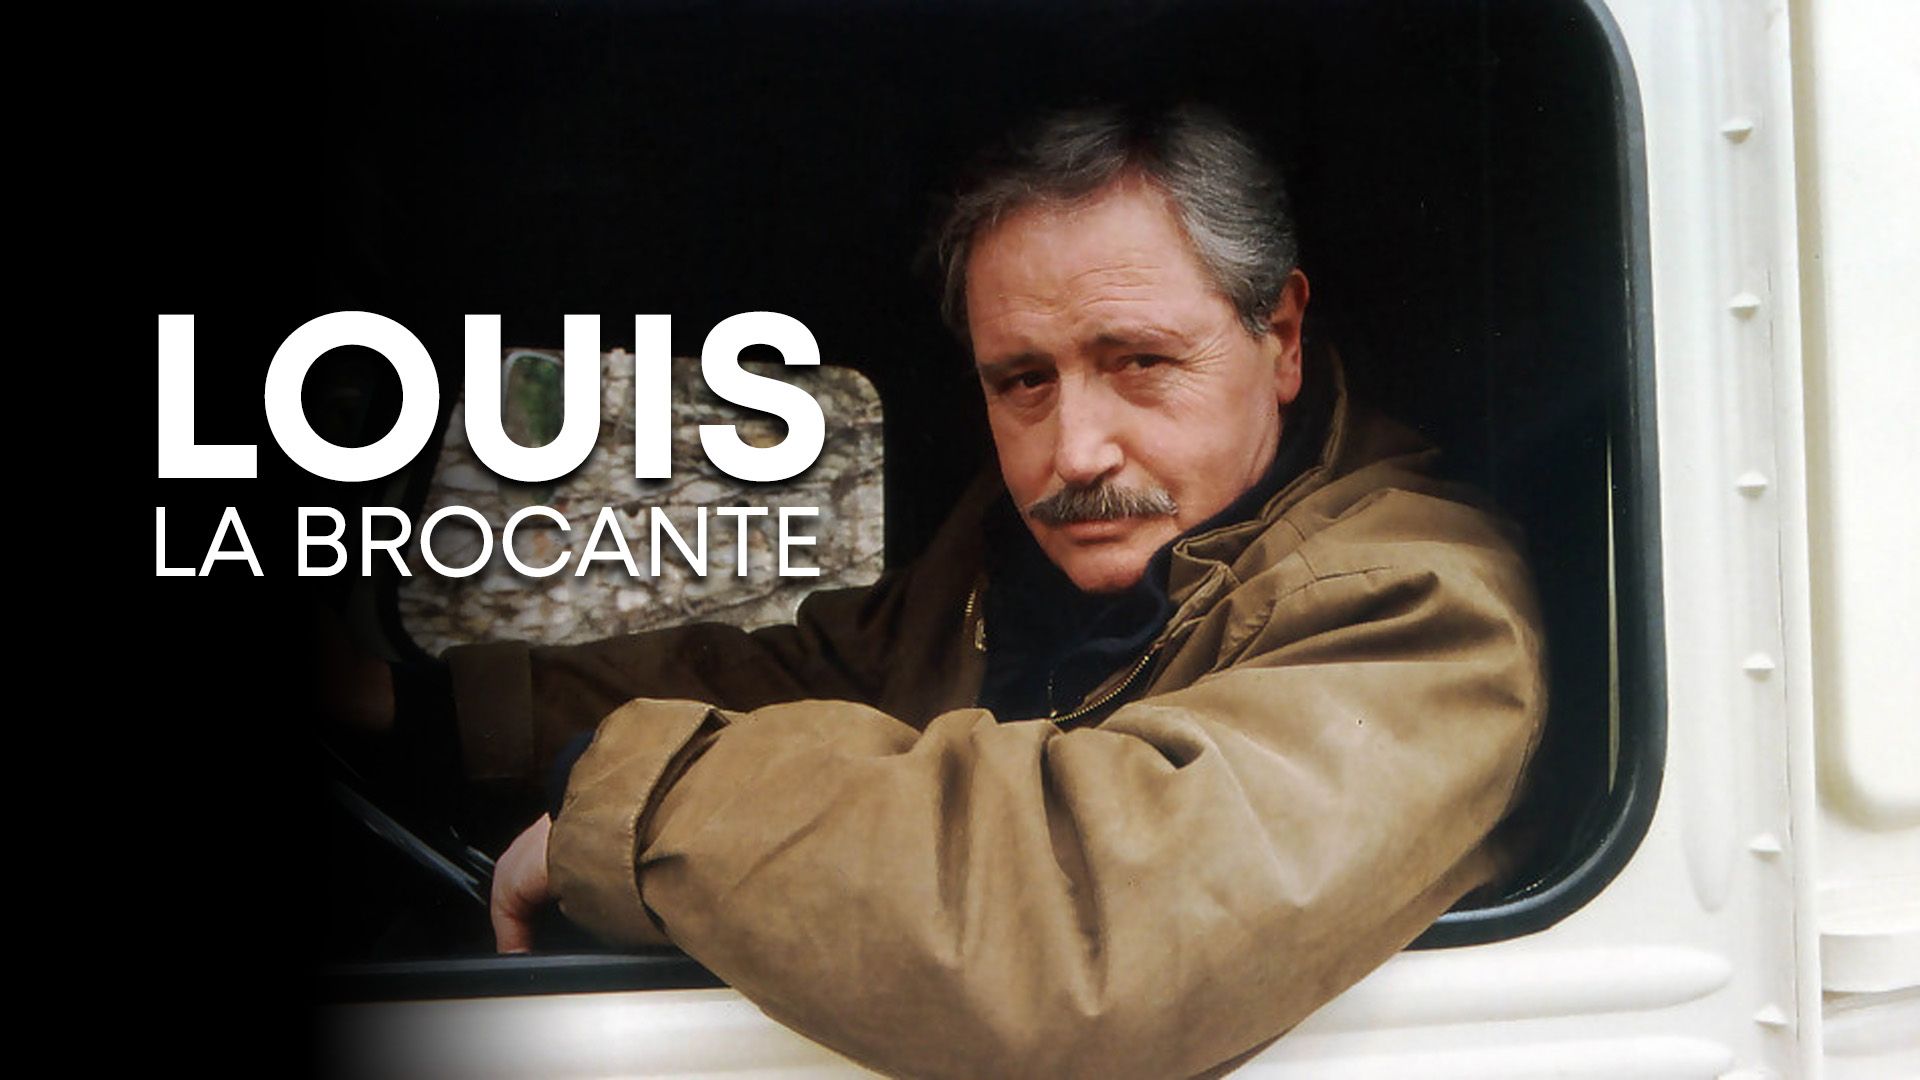 Louis La Brocante